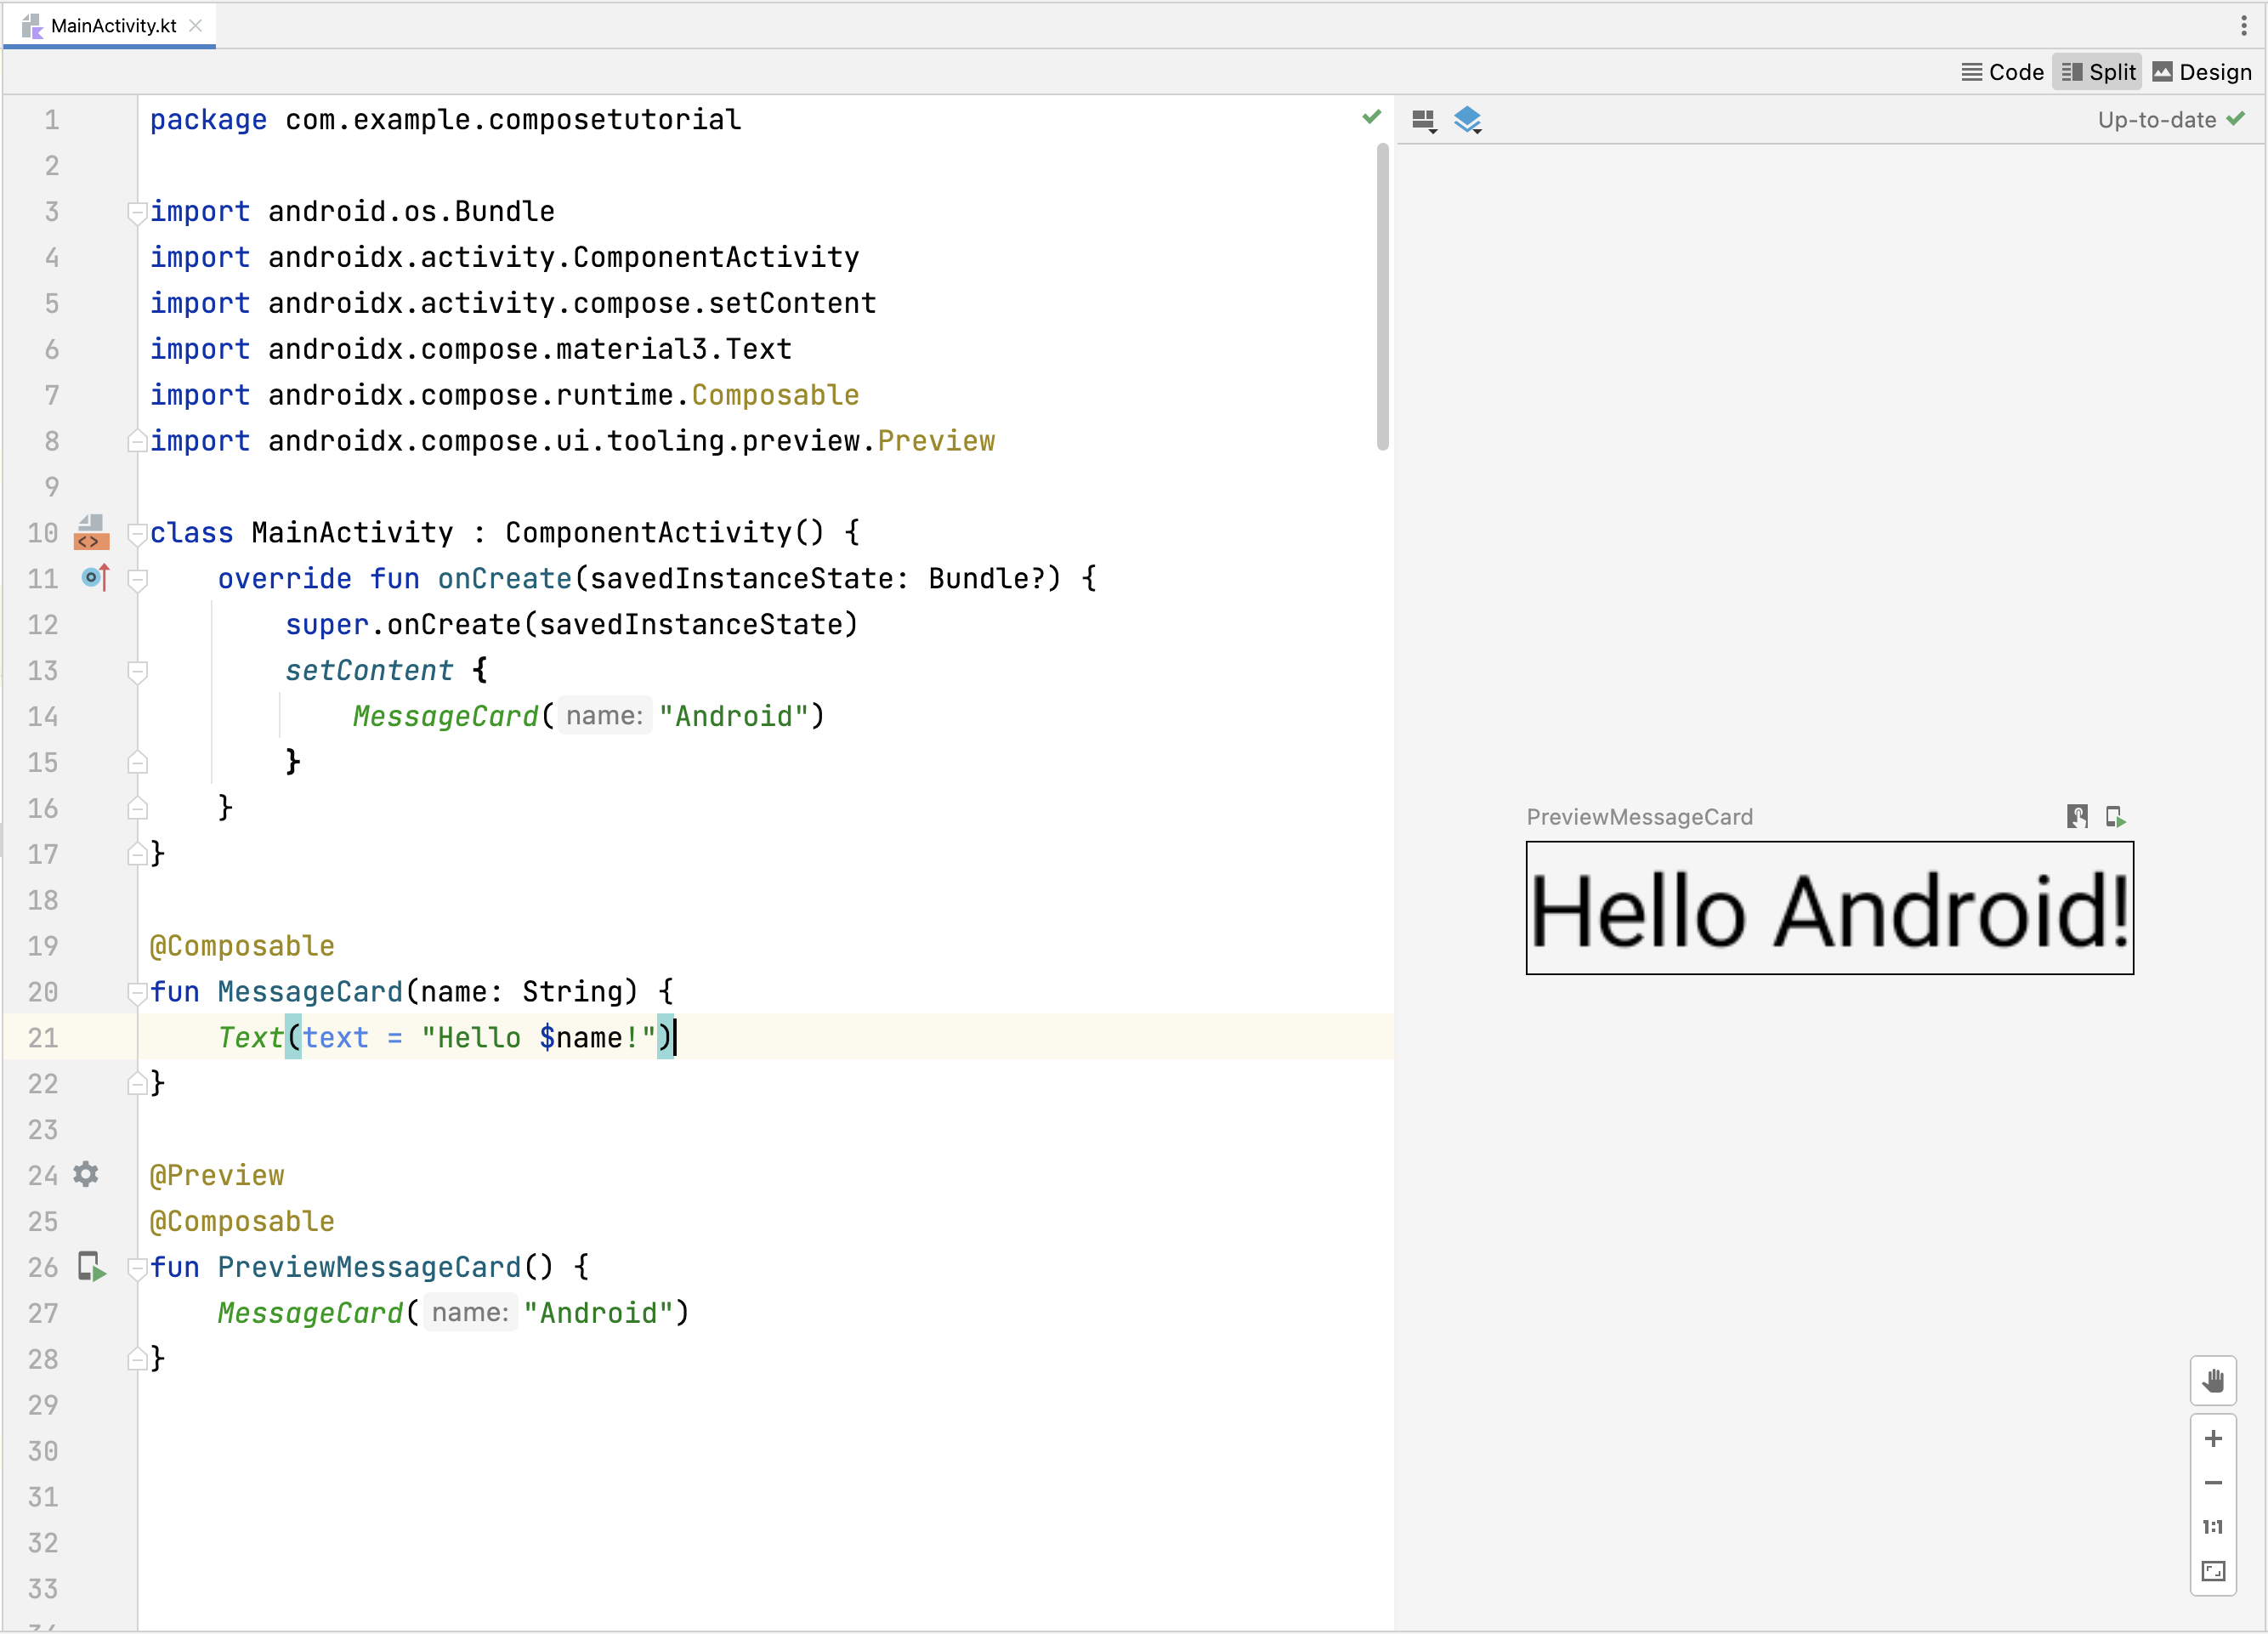 Vista previa de una función de componibilidad en Android Studio